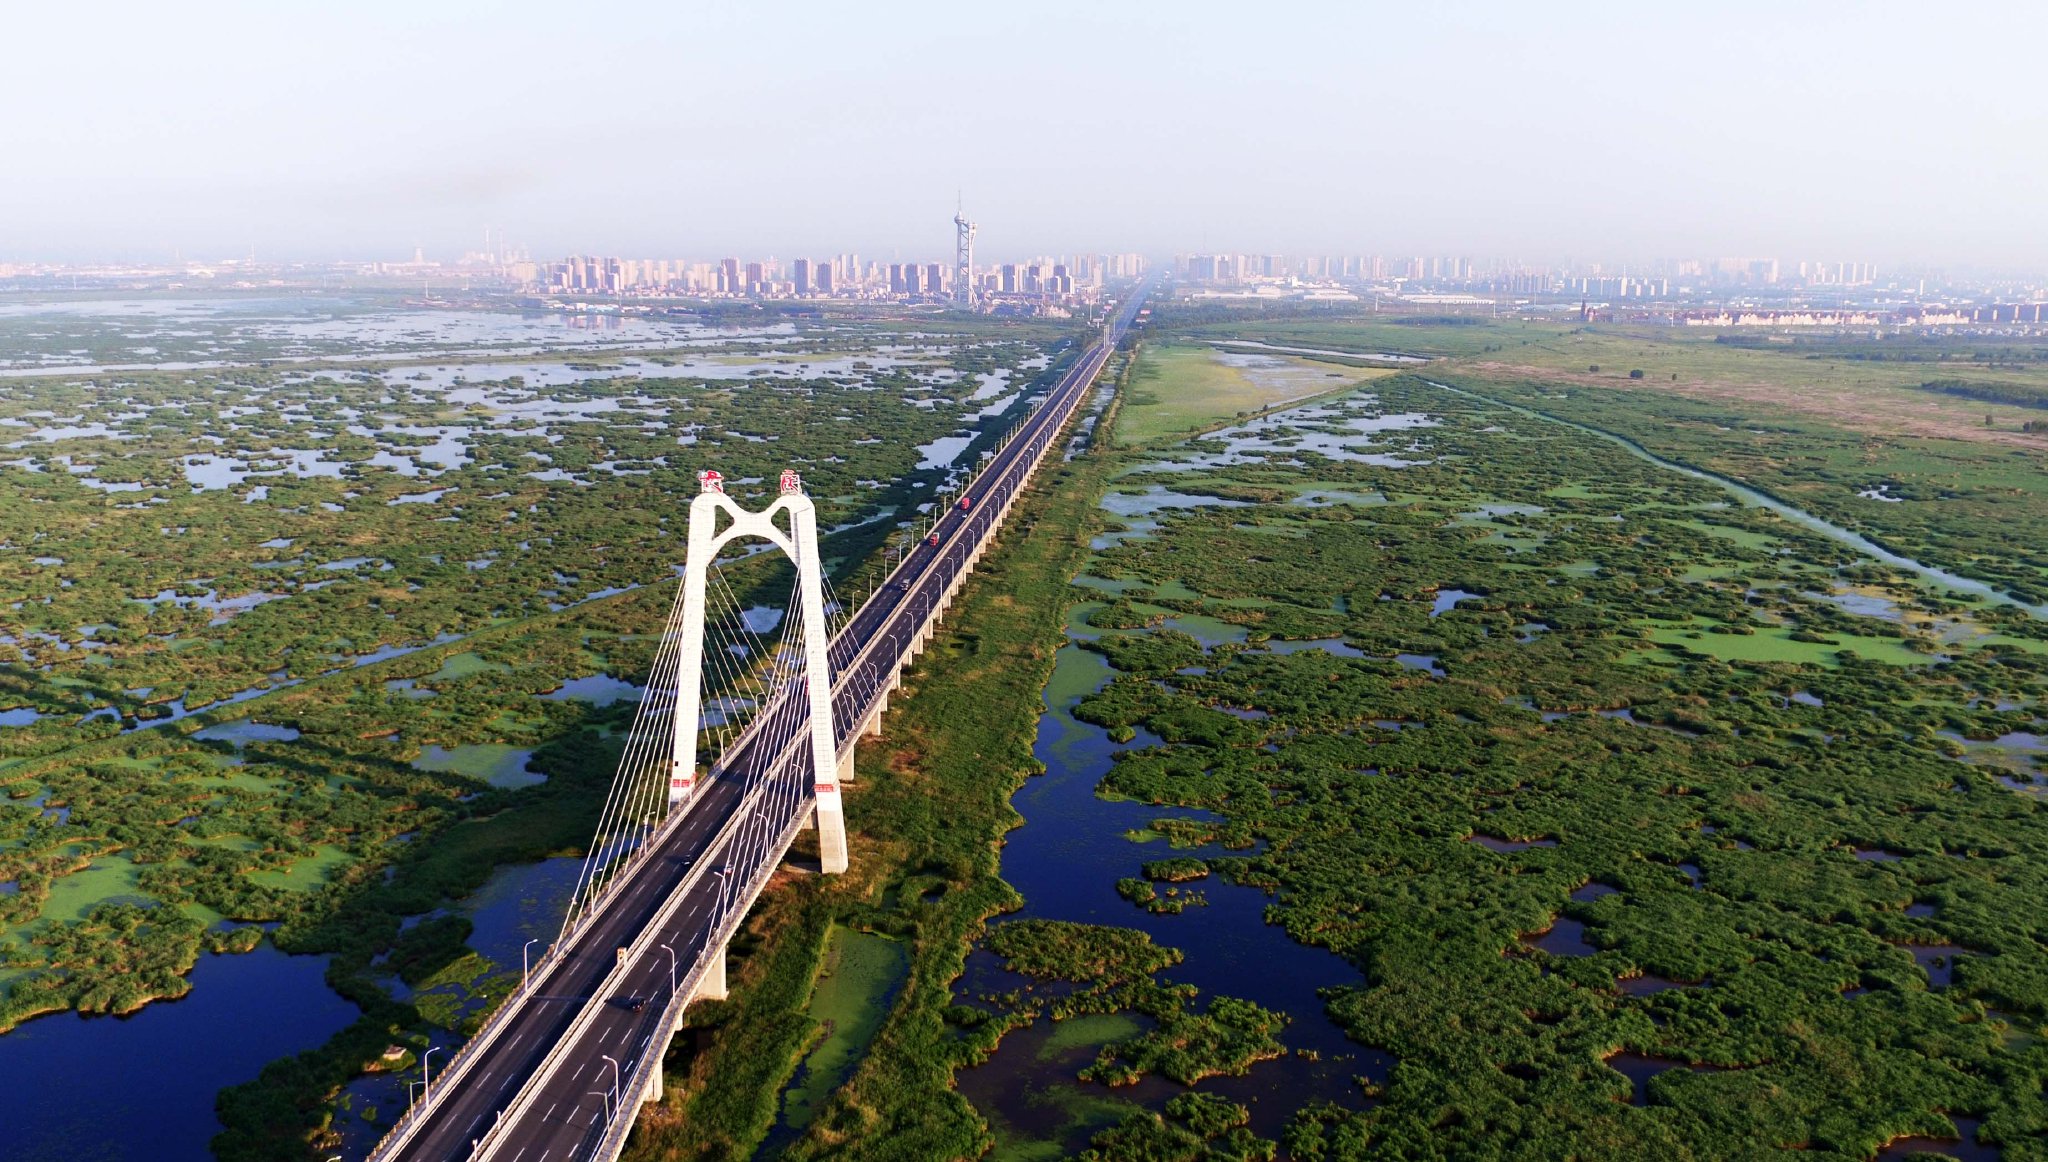 這是大慶龍鳳濕地大橋橫跨龍鳳濕地自然保護區。新華社記者 王凱 攝